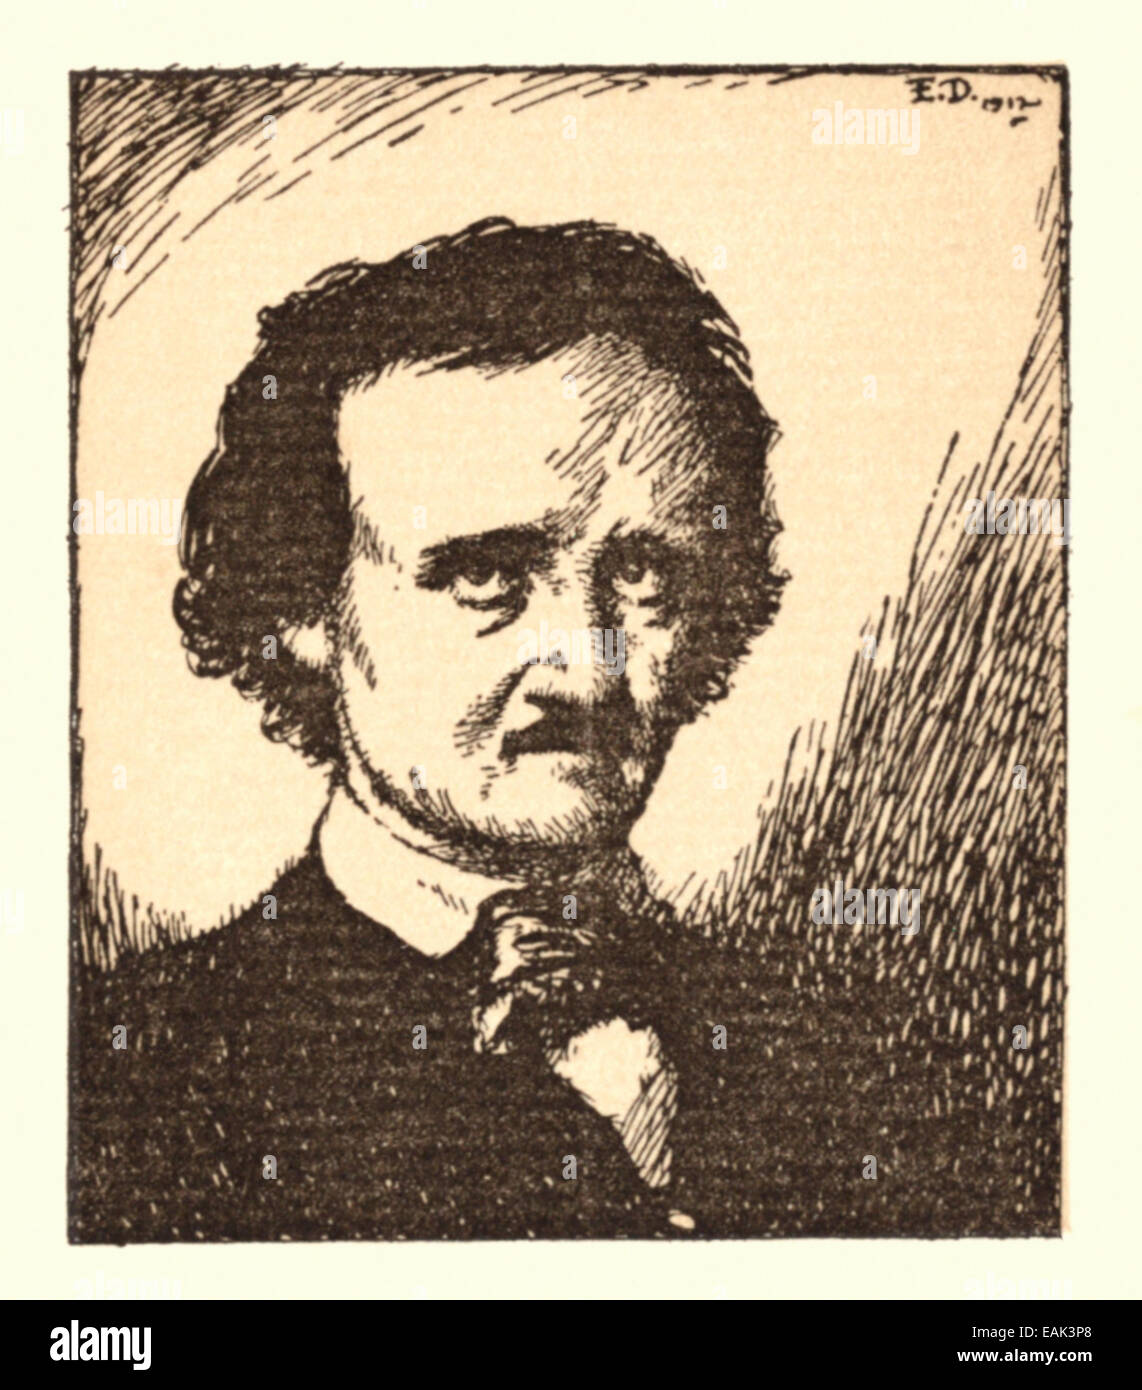 Porträt von Poe (1809-1849), Illustration von Edmund Dulac (1882-1953), die eine Sammlung seiner Werke illustriert in 1912 veröffentlicht. Stockfoto